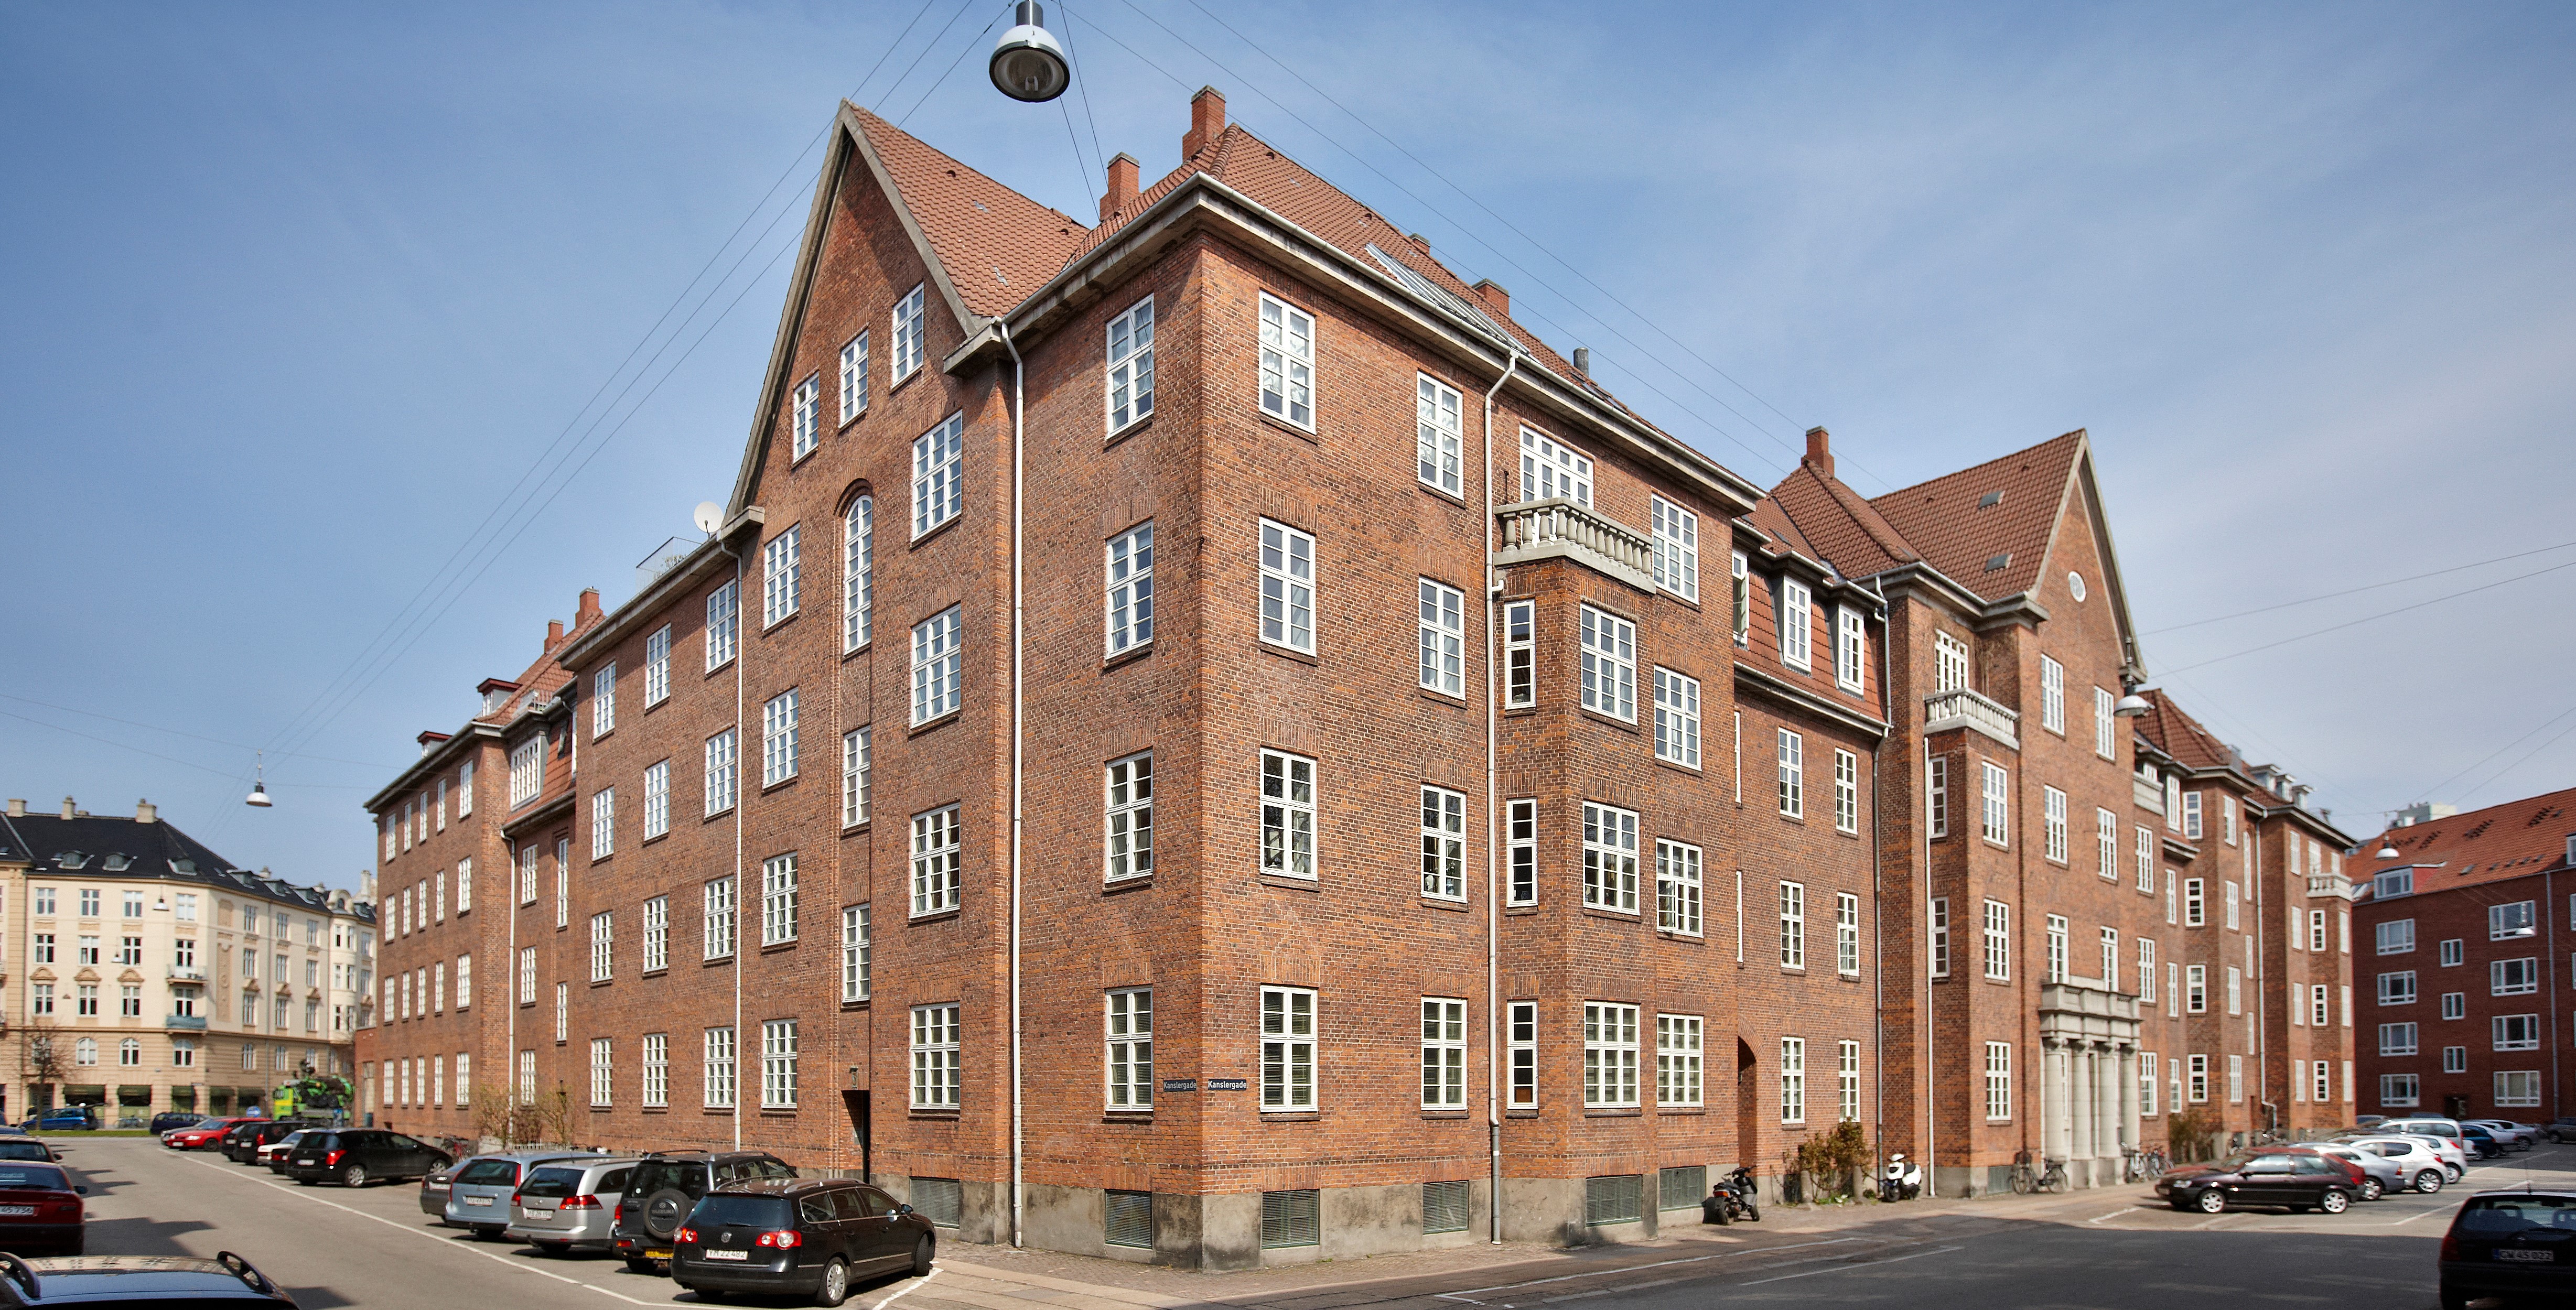 Kanslerhus på Østerbro sparede 18 procent på varmeregningen. Foto: Ebbe Forup